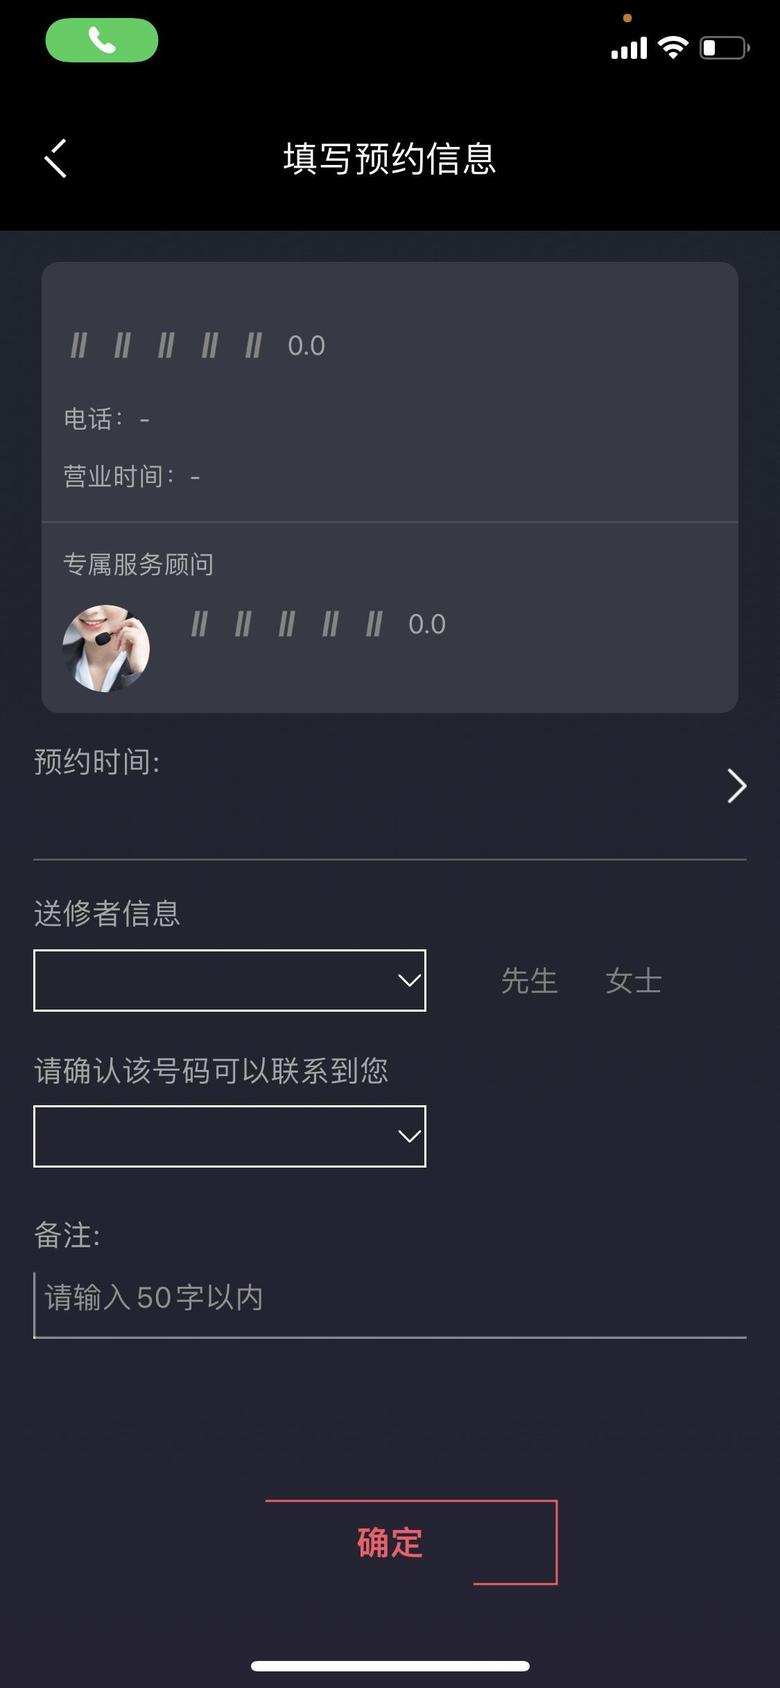 领克03 App里面预约保养，不能选我的经销商，定位给我定的杭州，还不能换，点进去就黑屏，这个怎么处理啊